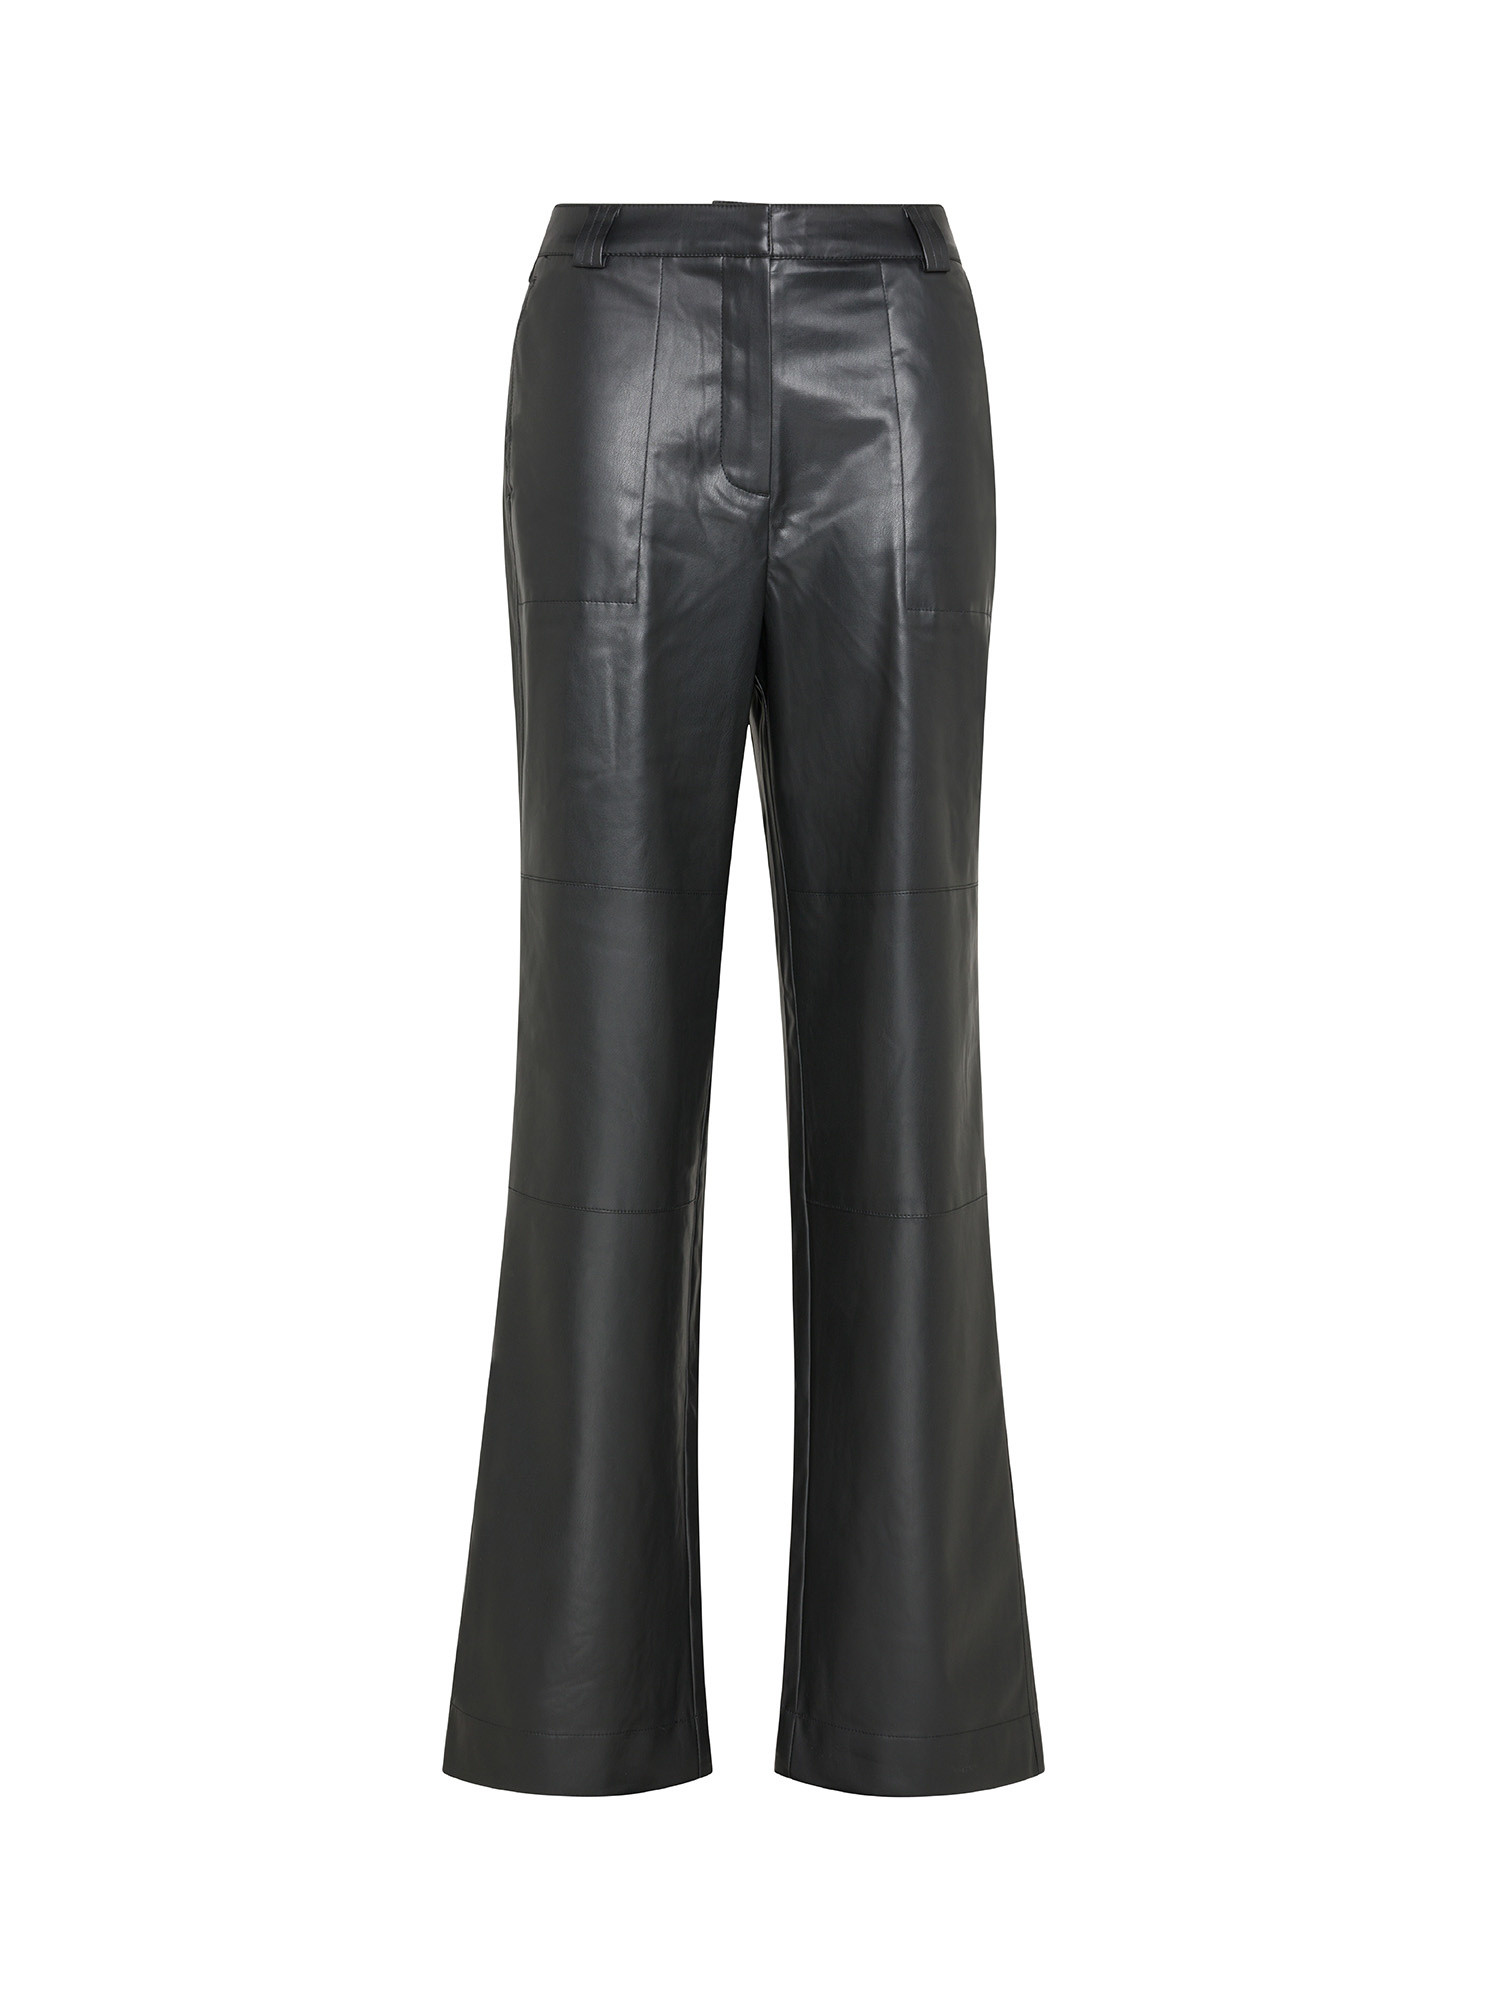 Pantaloni in ecopelle, Nero, large image number 0